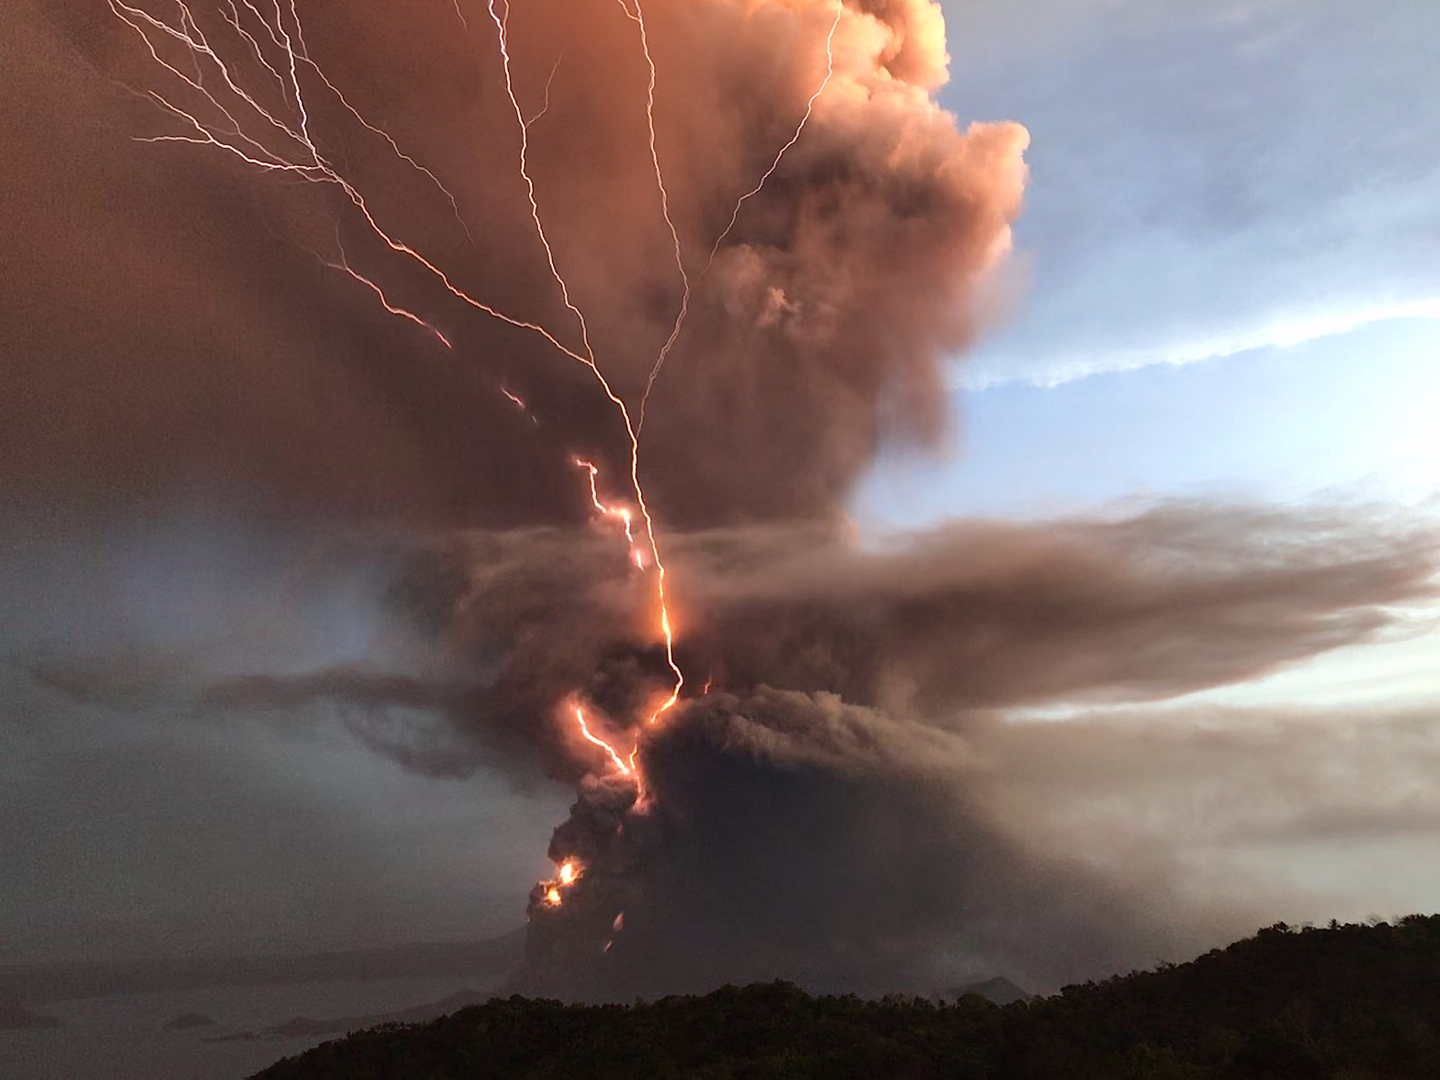 البرق البركاني قد يكون الشرارة التي أطلقت الحياة على الأرض